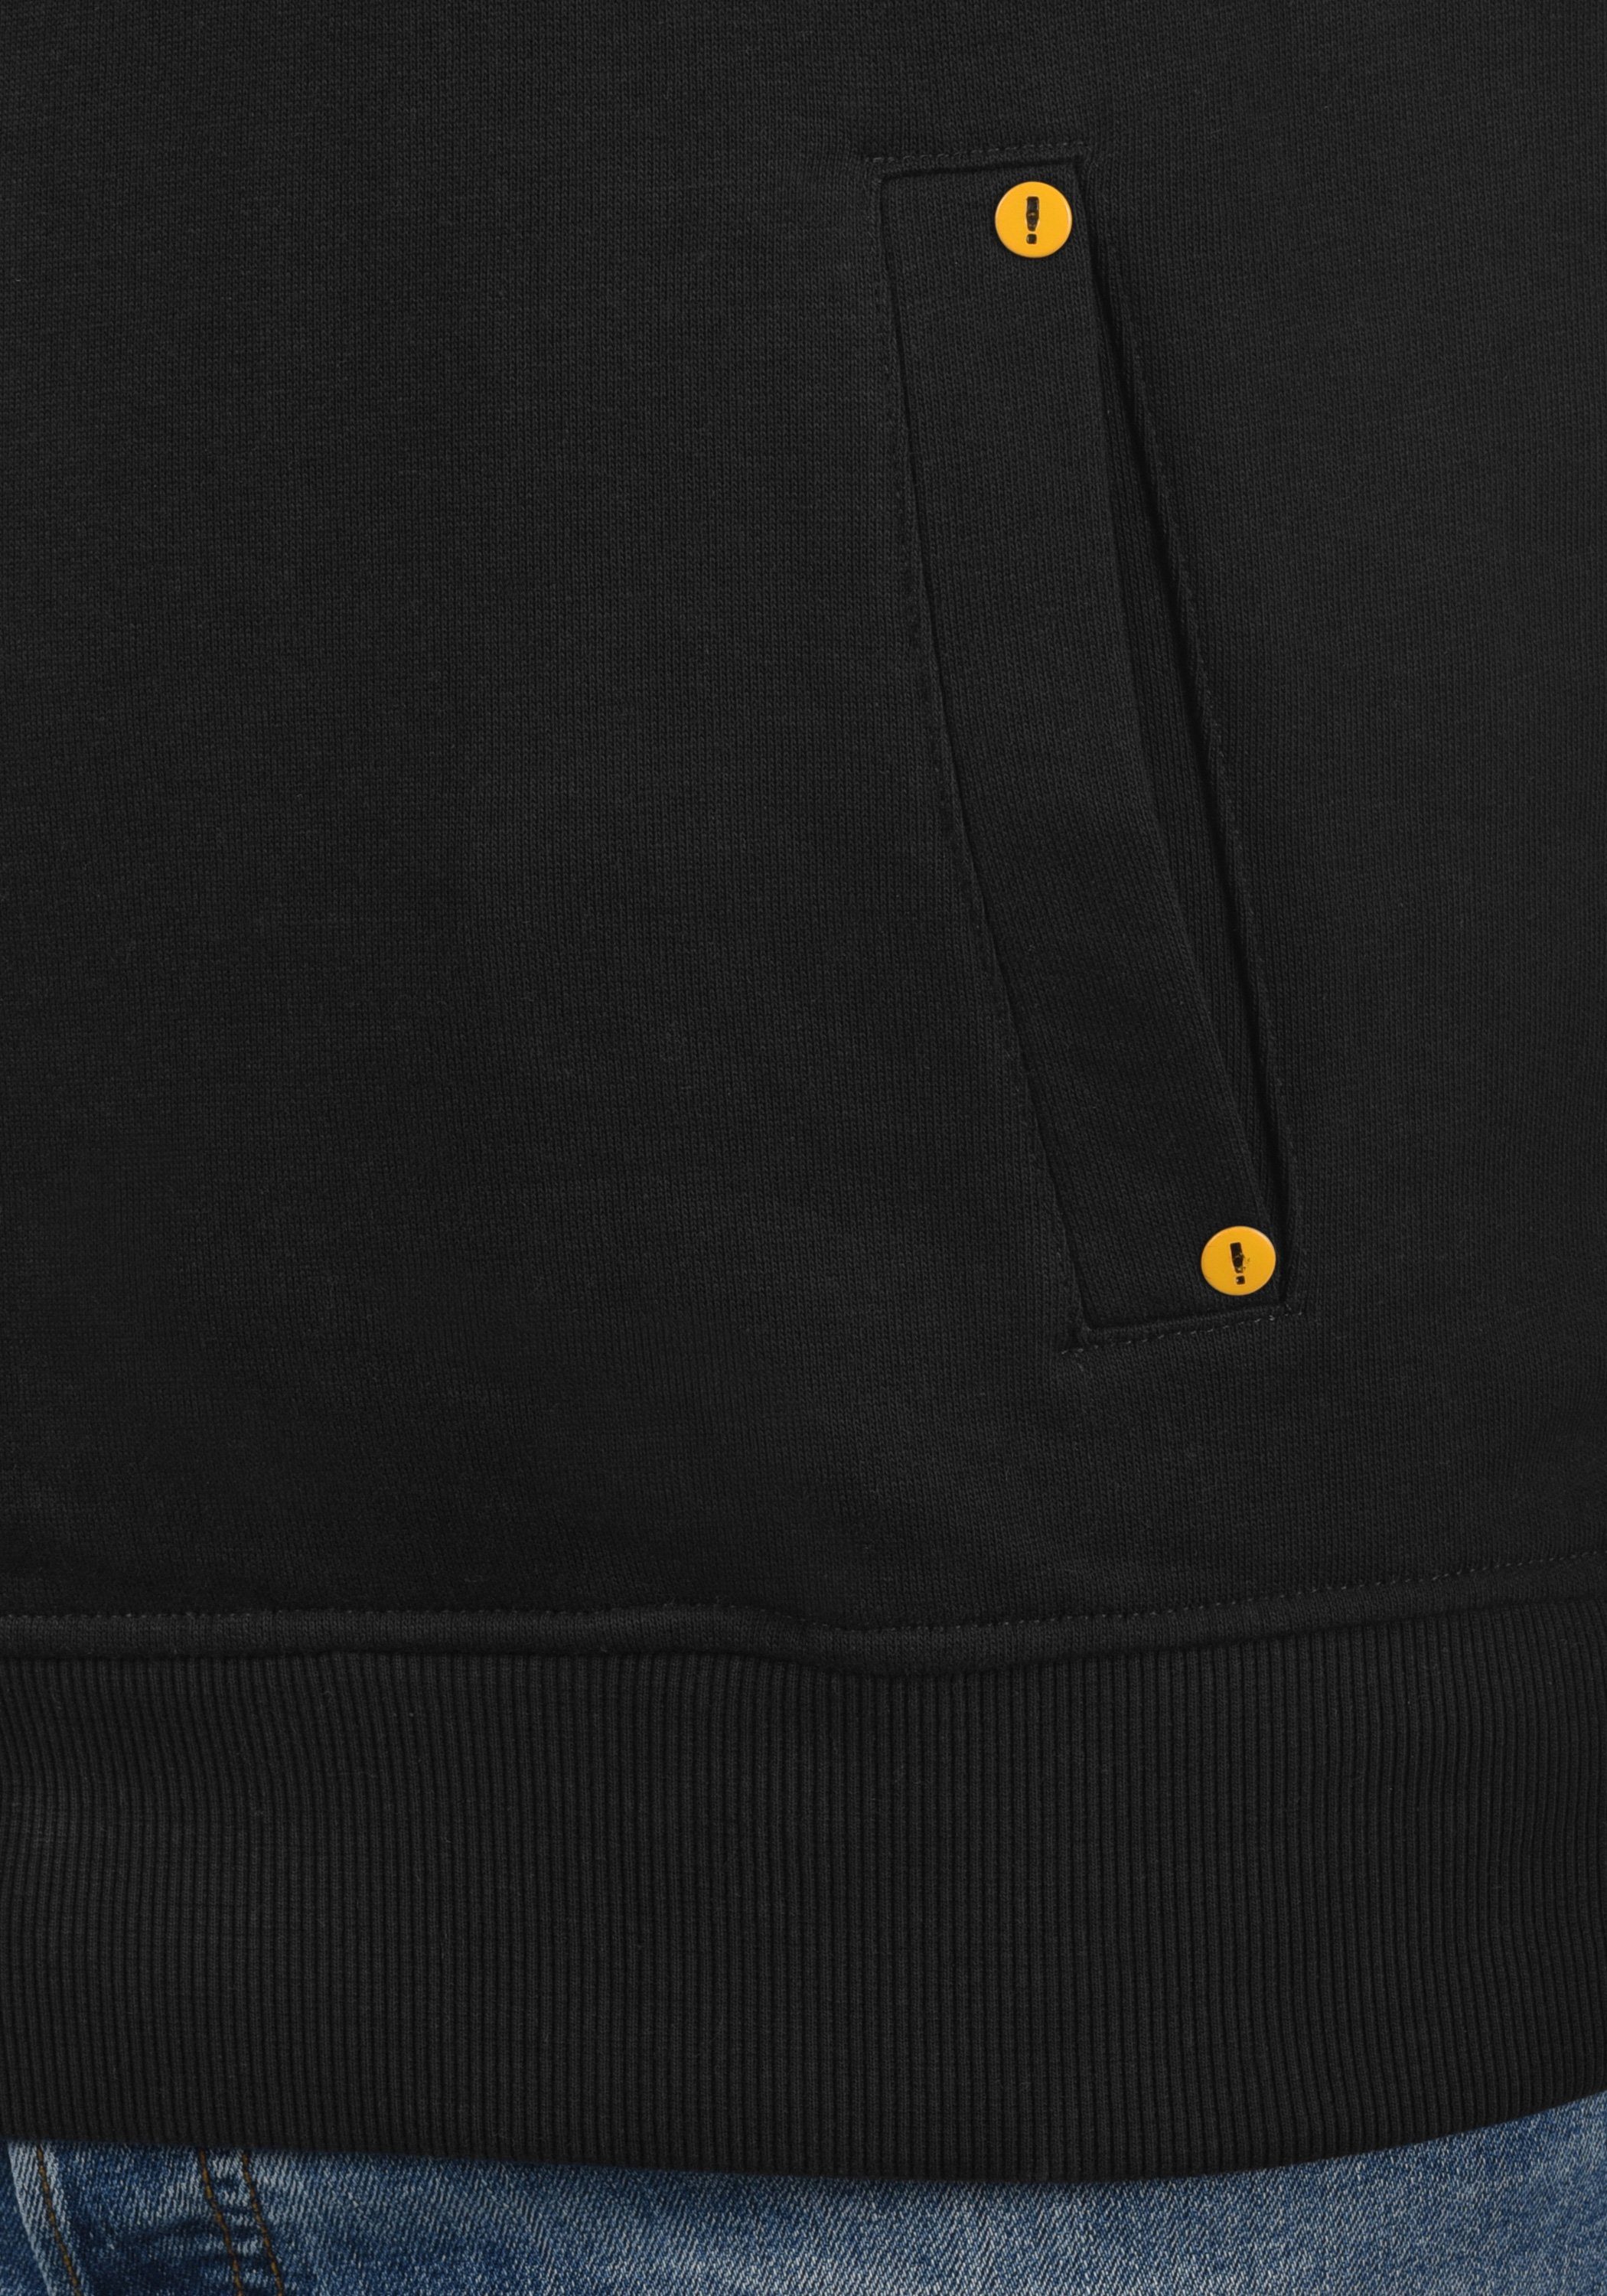 Solid Sweatshirt SDKaan (194007) mit Kapuzenpullover kontrastreichen Black farblichen Details